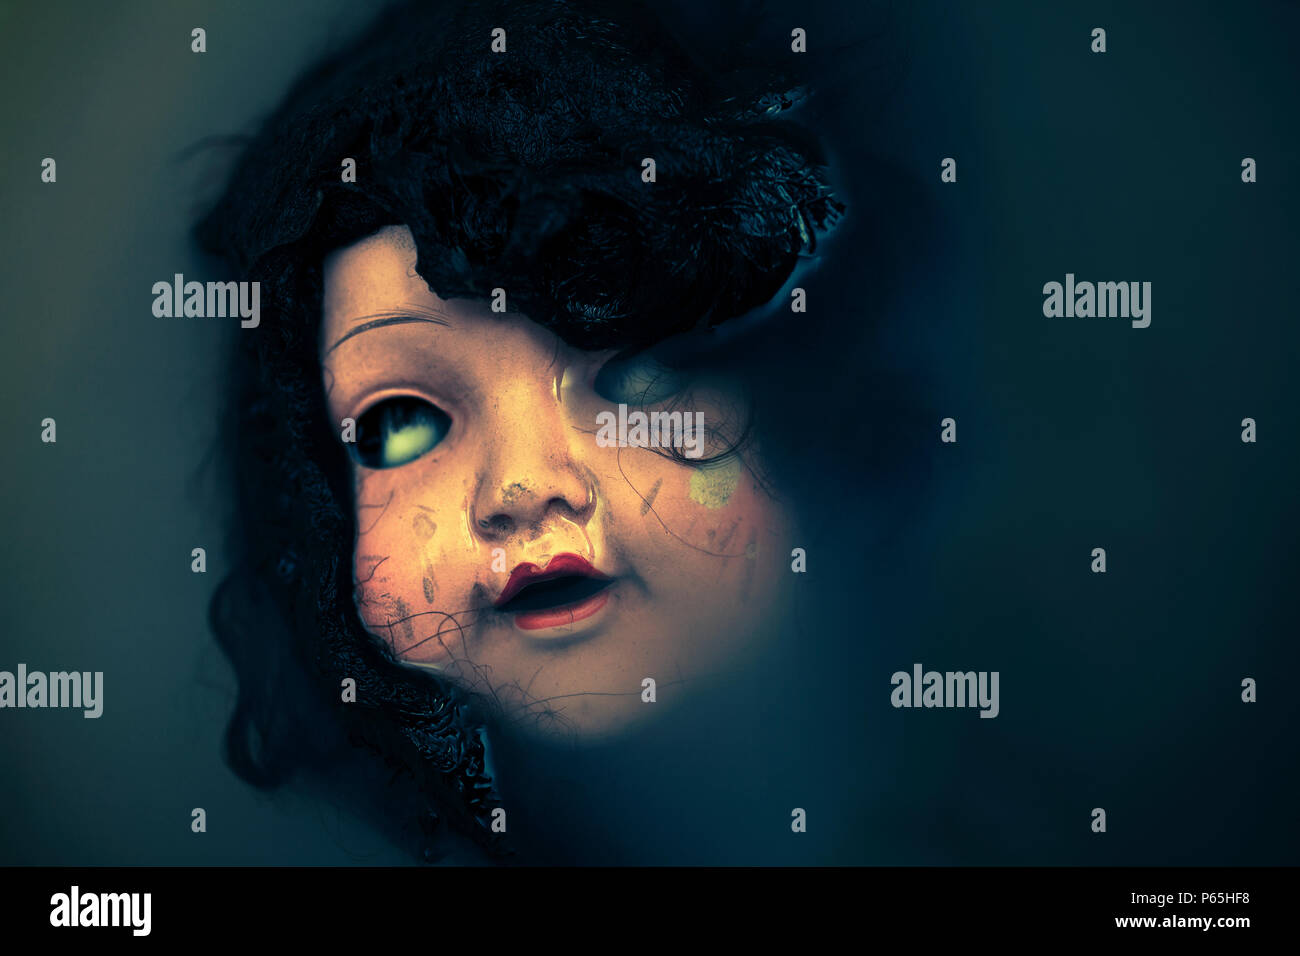 Creepy doll face dans l'eau sombre sale Banque D'Images